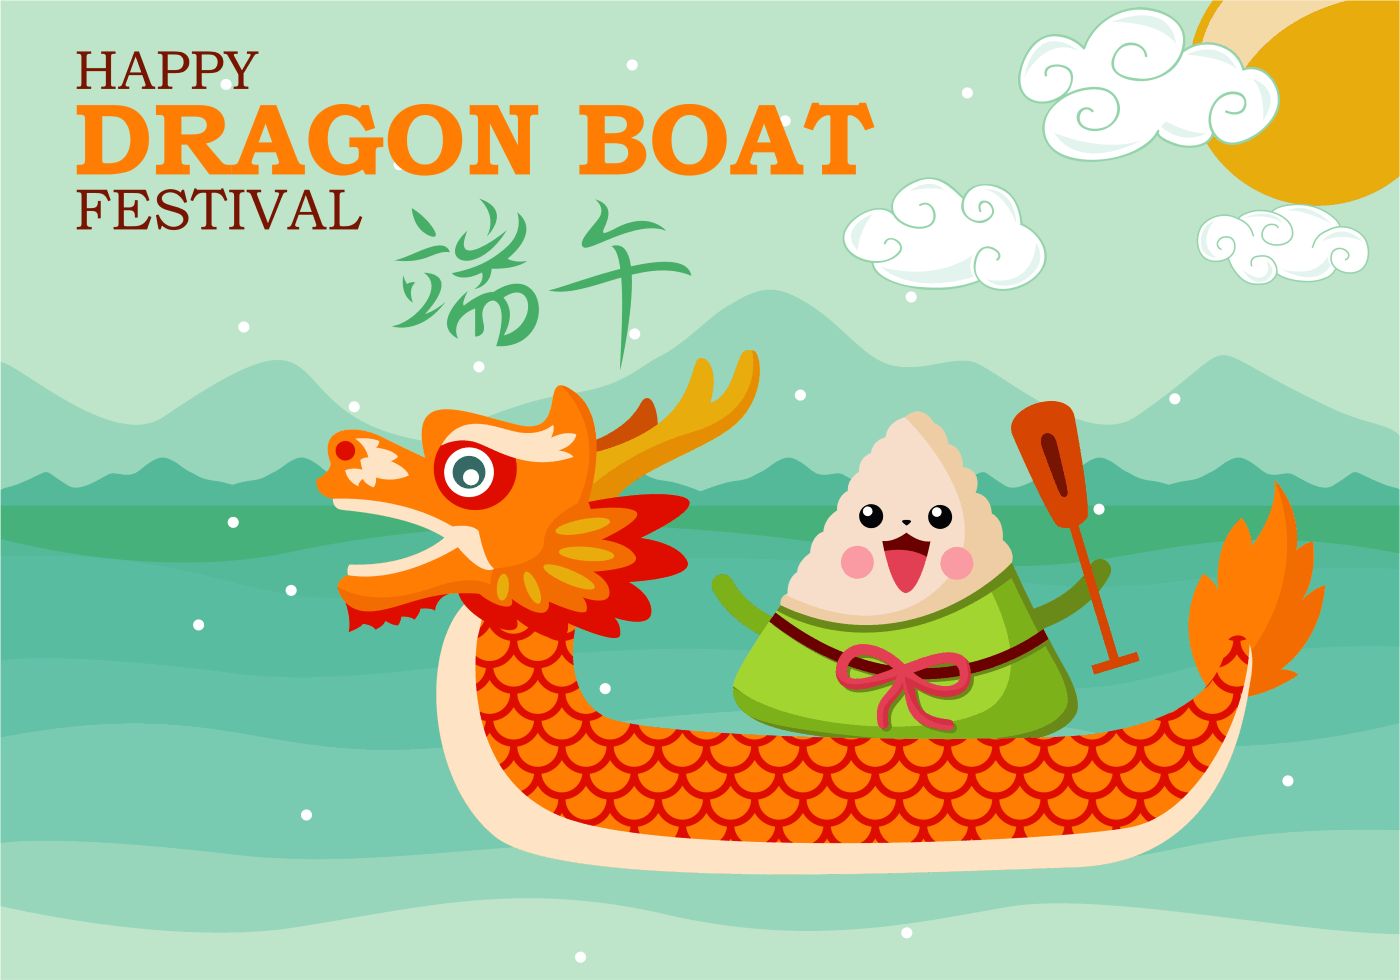 Fun Dragon Boat Festival Vector 142387 Vector Art At Vecteezy